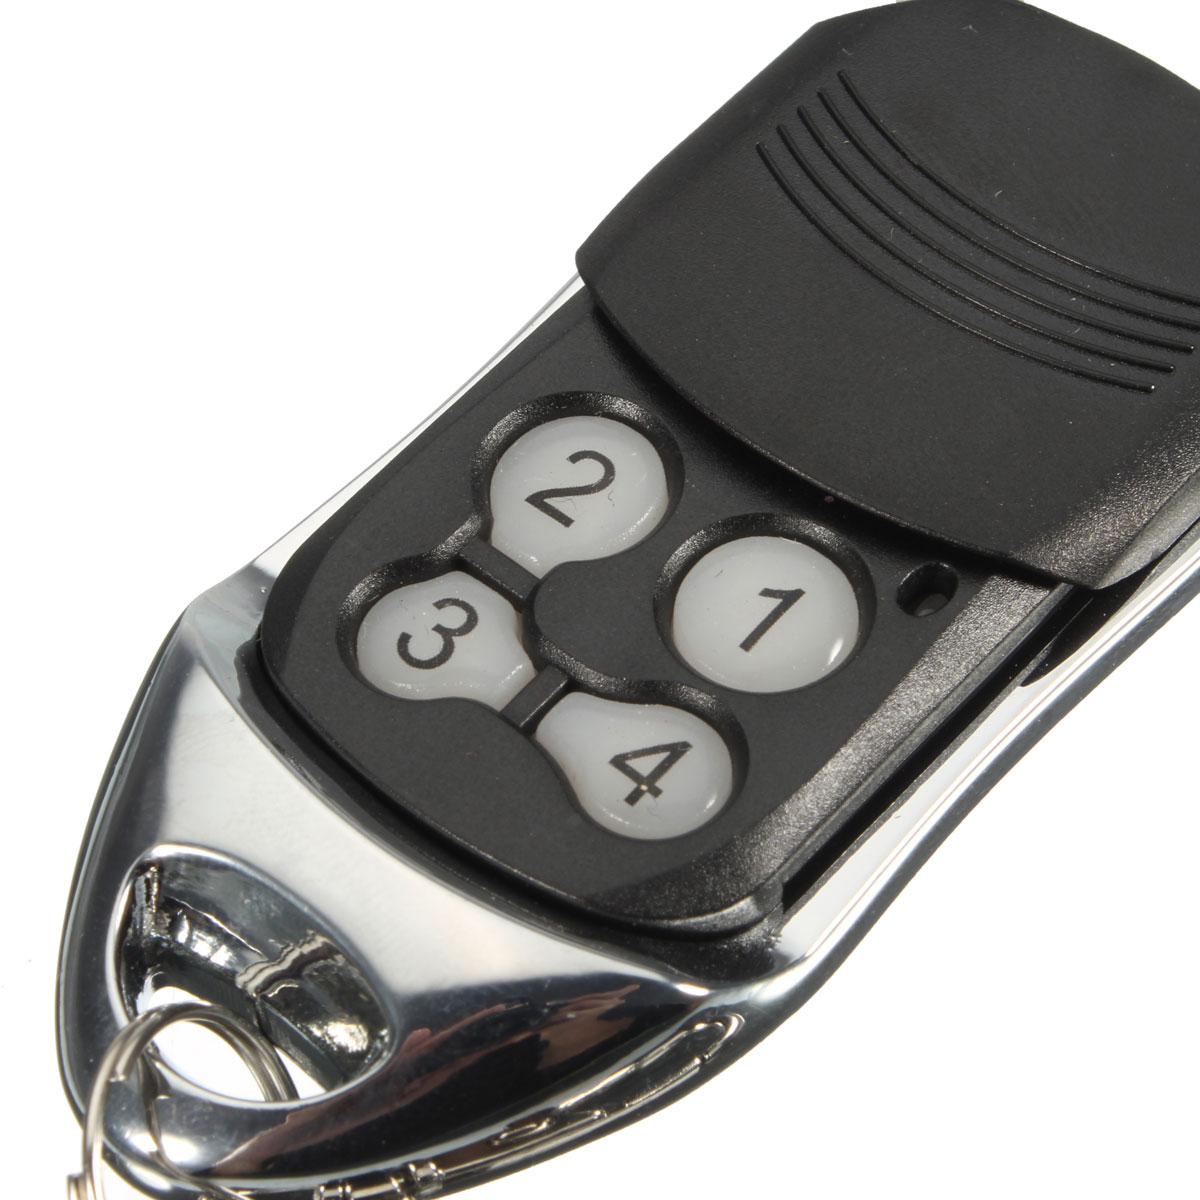 4 Button 433MHz Garage Gate Key Remote Control For 433LC 787452 TE4433H XT2 XT4